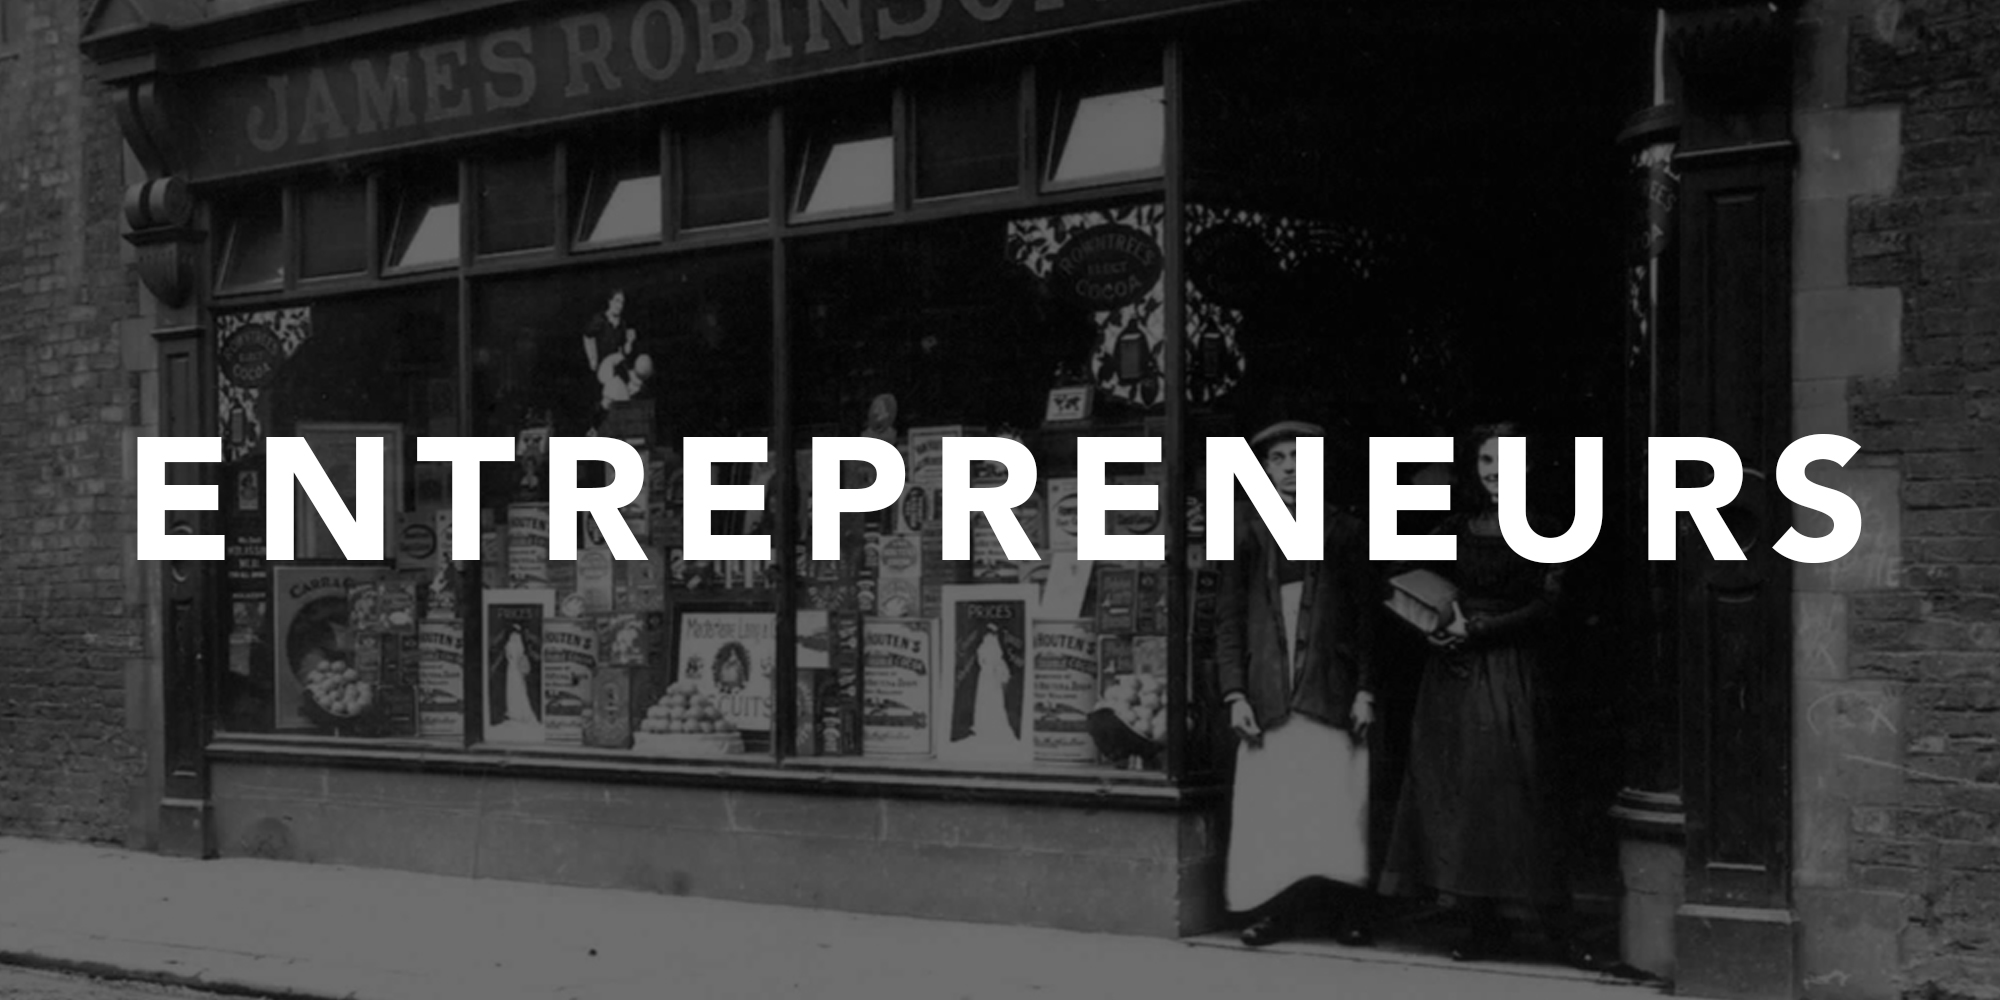 rickjesse-entrepreneurs-blog